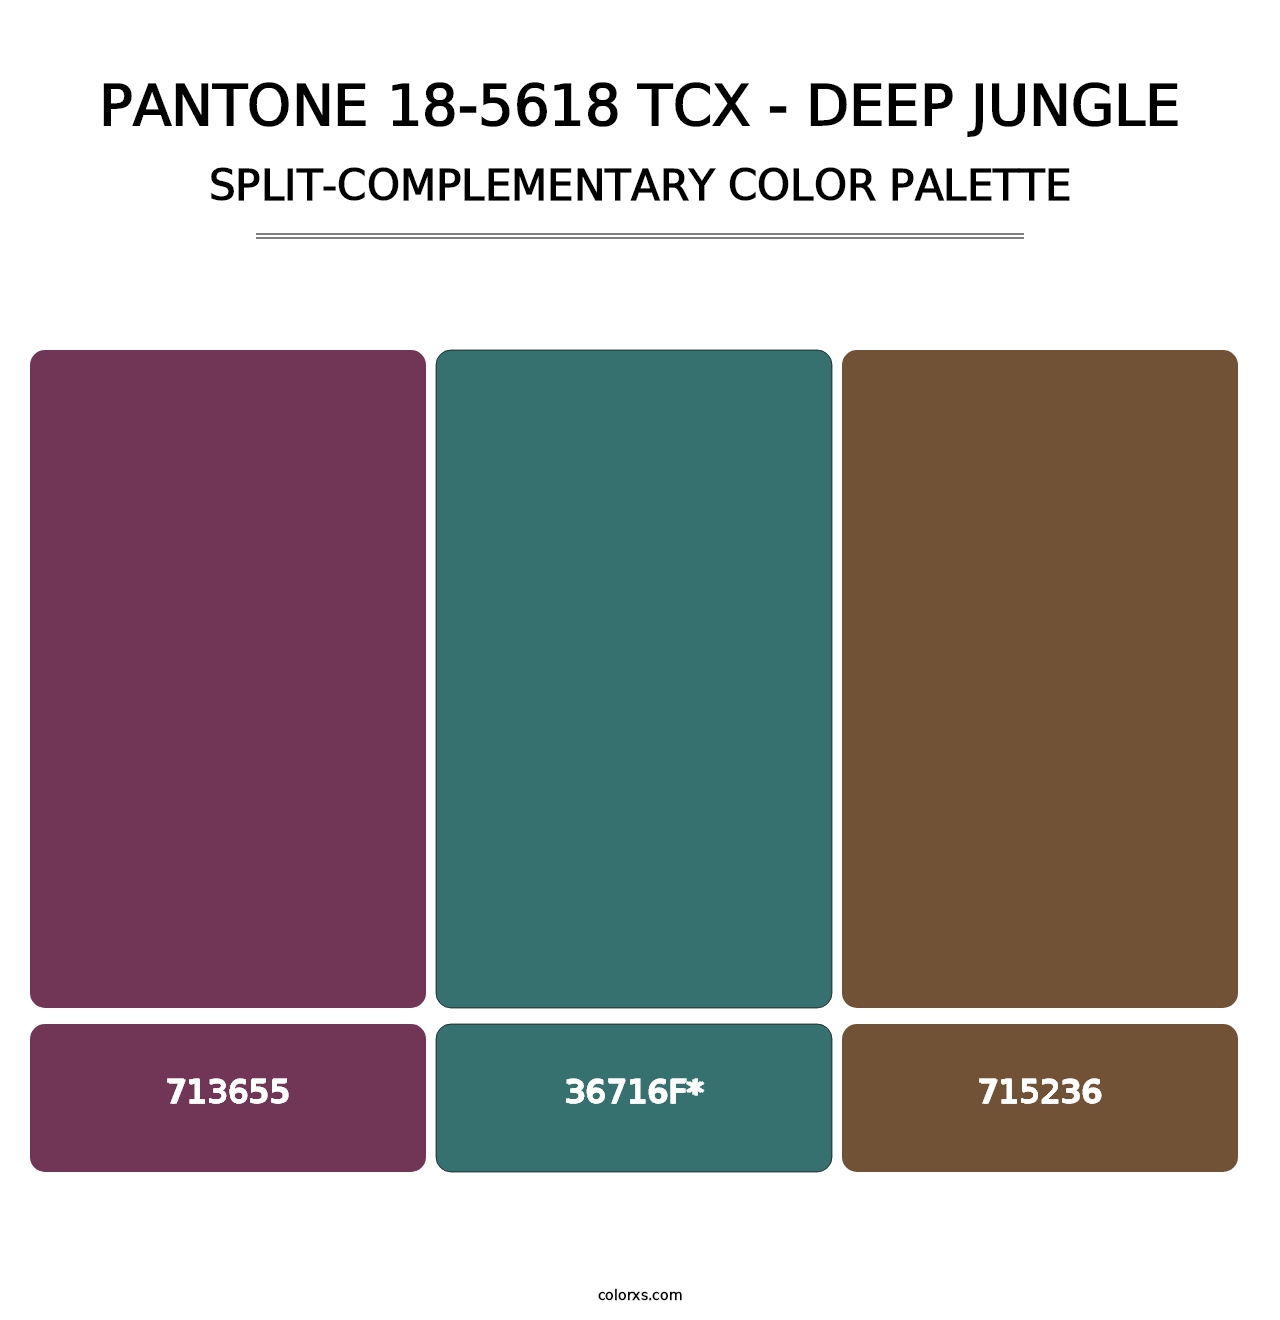 PANTONE 18-5618 TCX - Deep Jungle - Split-Complementary Color Palette